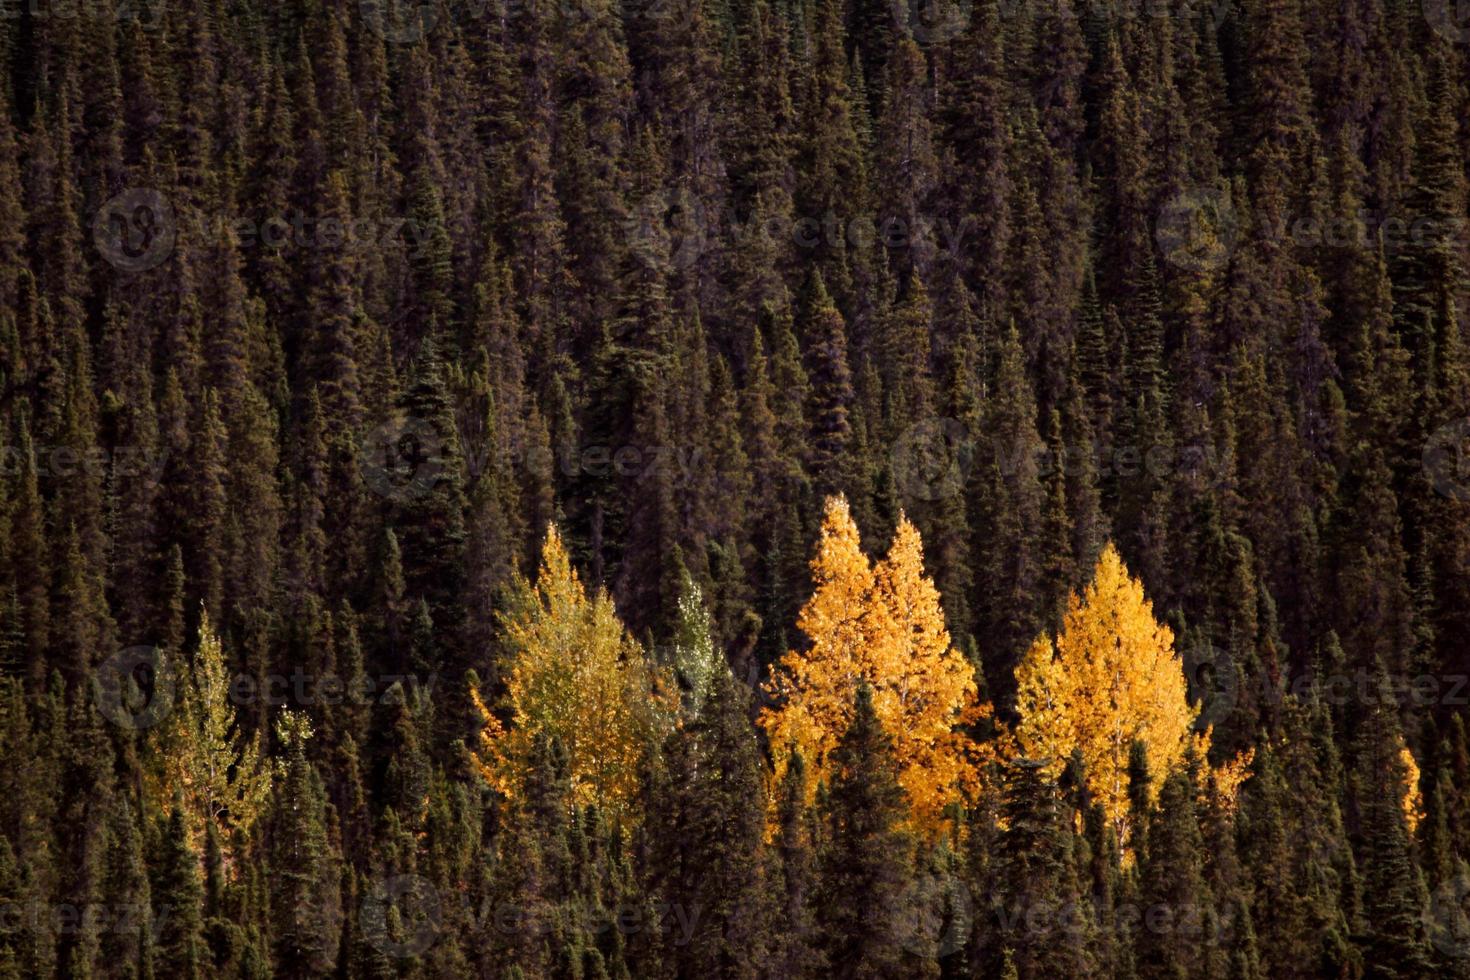 Les trembles aux couleurs de l'automne parmi les pins tordus photo